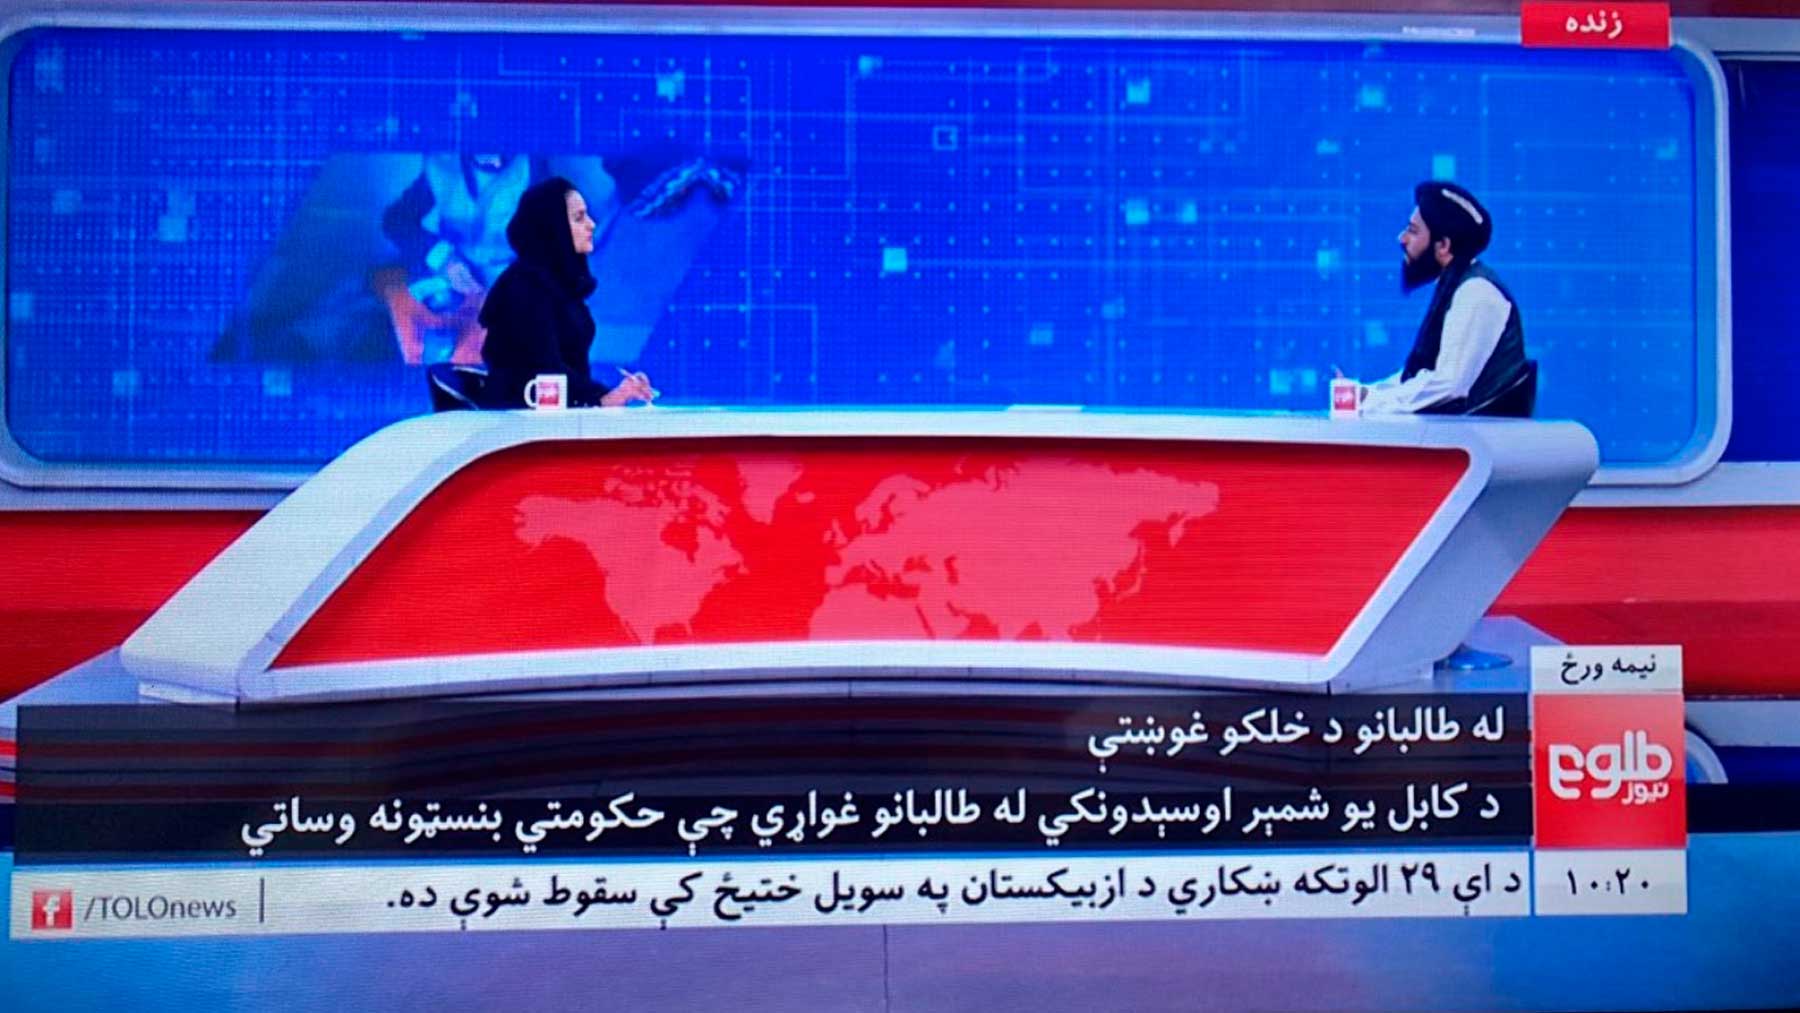 La periodista Beheshta Arghand entrevista en directo a un miembro de los talibanes en la principal televisión de Afganistán, Tolo News.